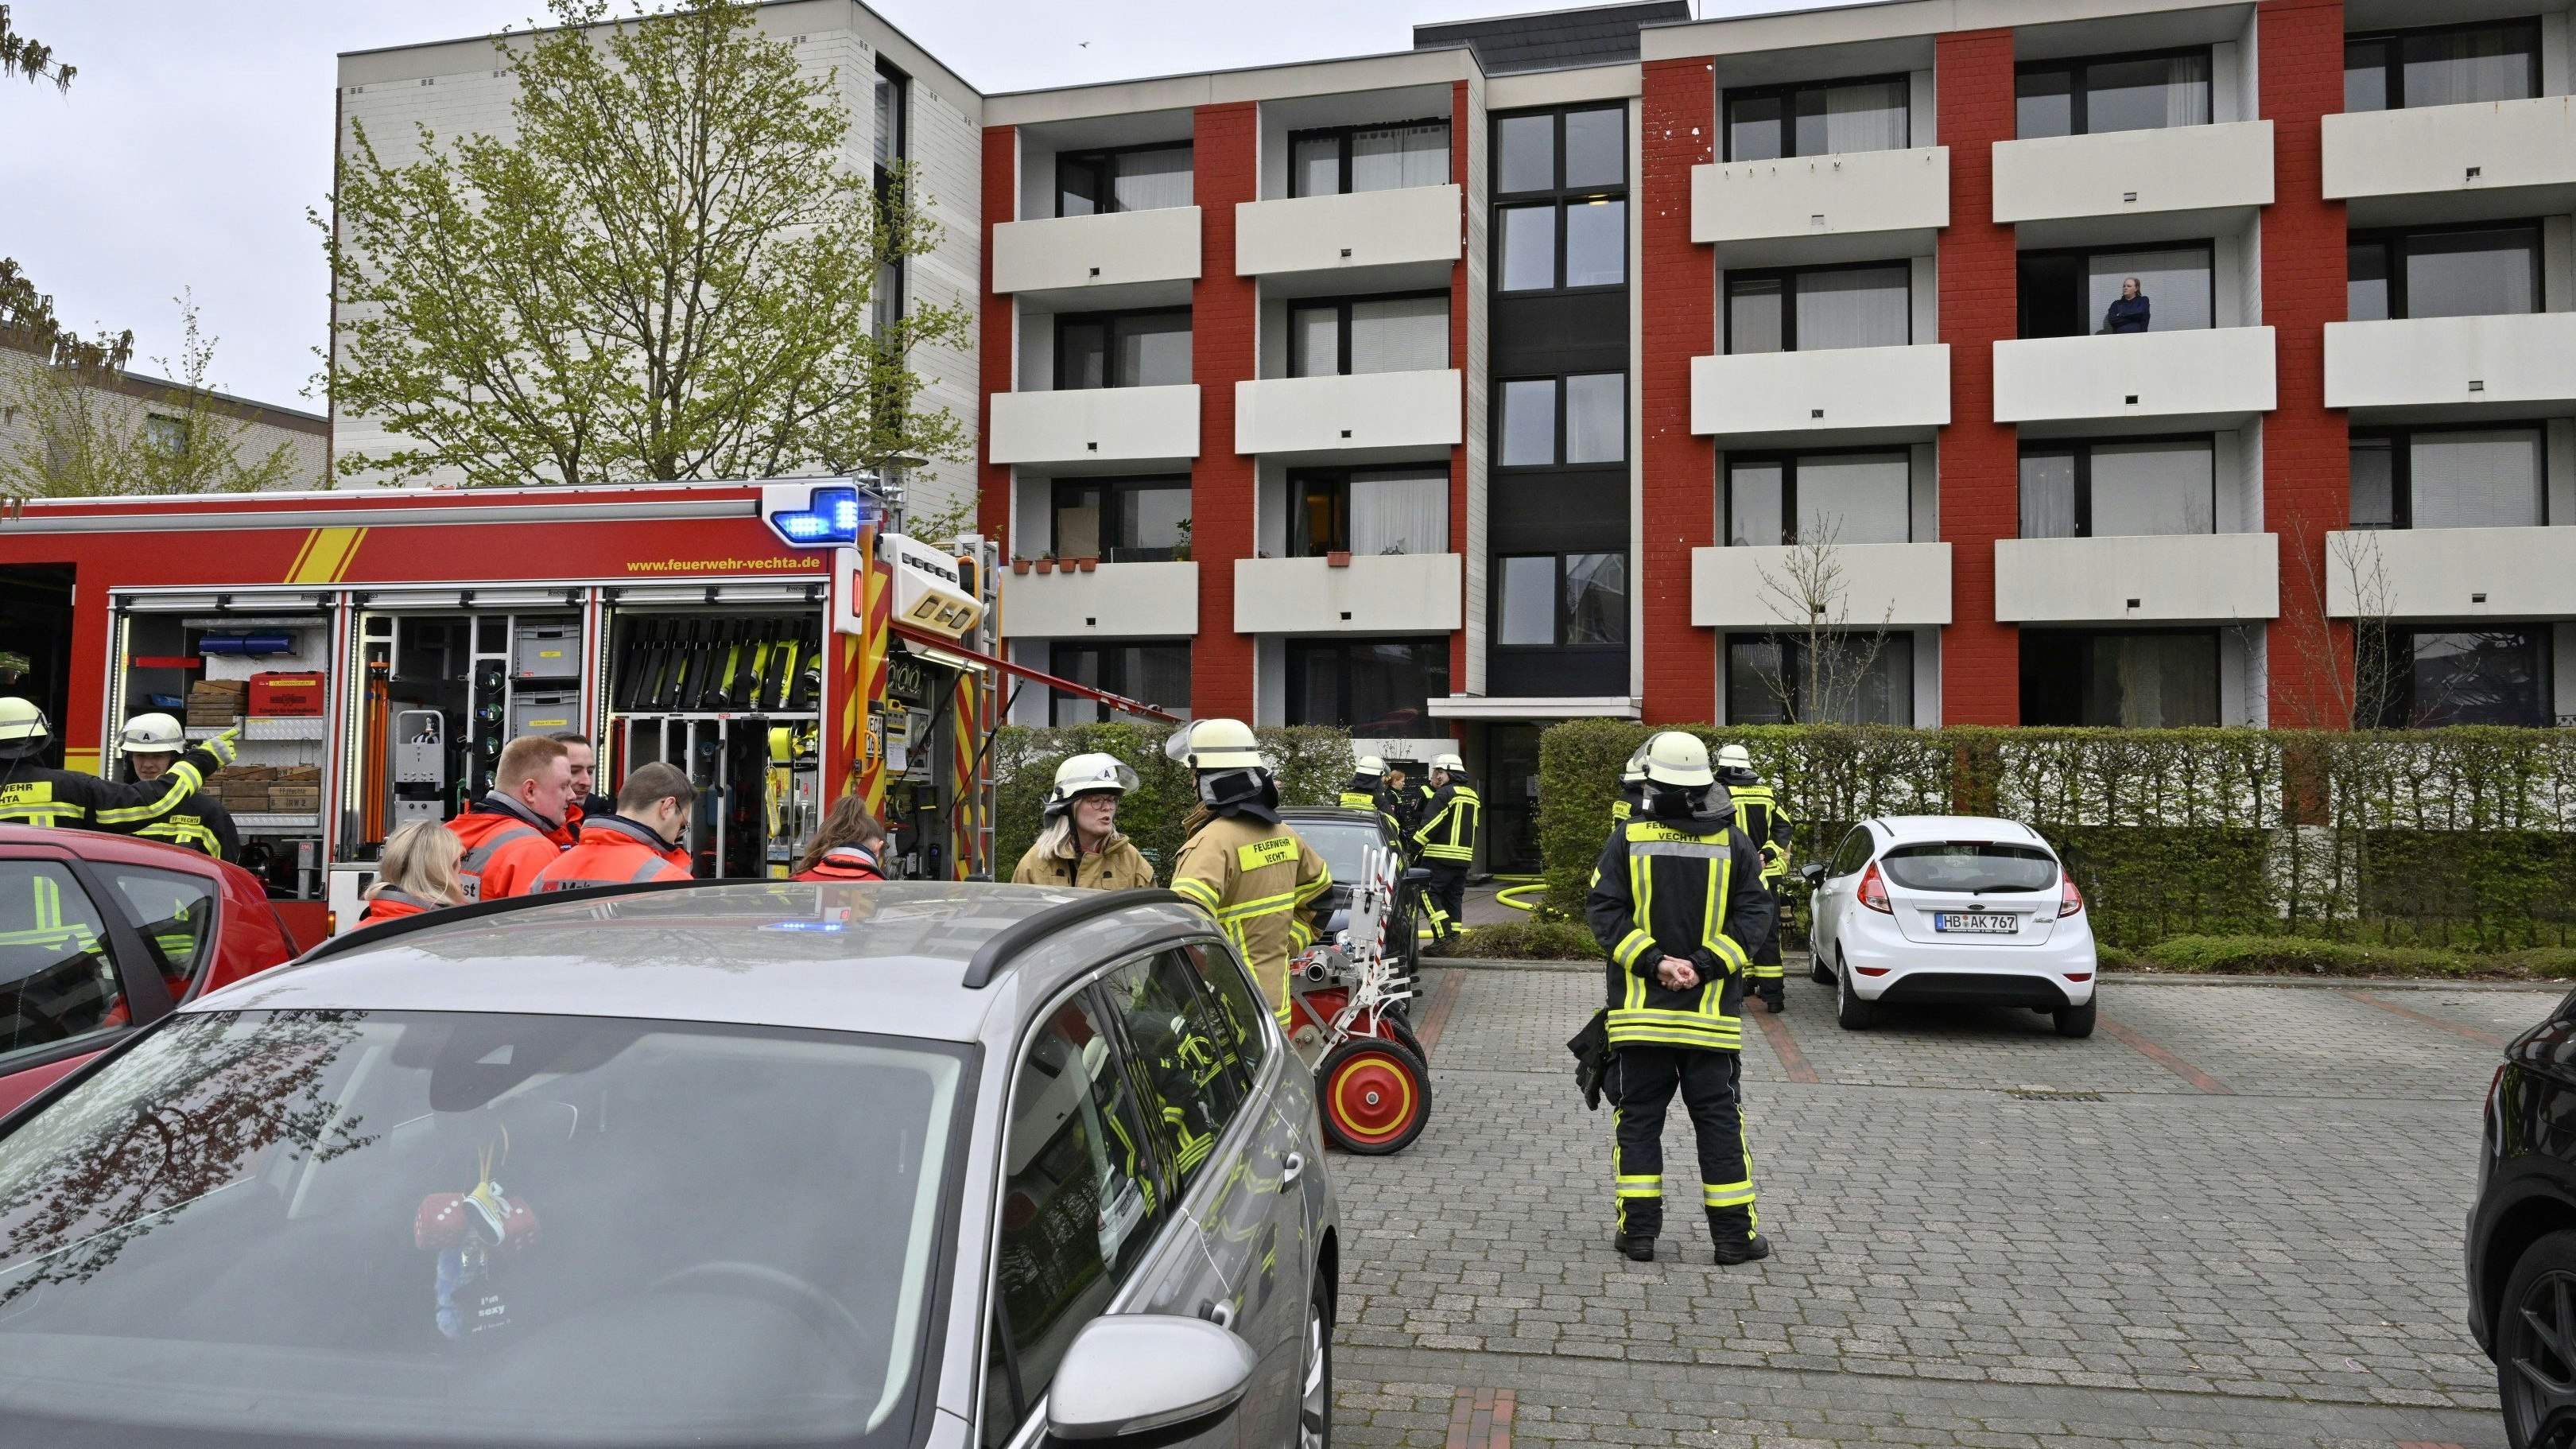 Feuerwehr und Rettungskräfte eilten schnell herbei. Der Mann kam ins Krankenhaus. Die Wohnung war schnell entlüftet. Foto: M. Niehues